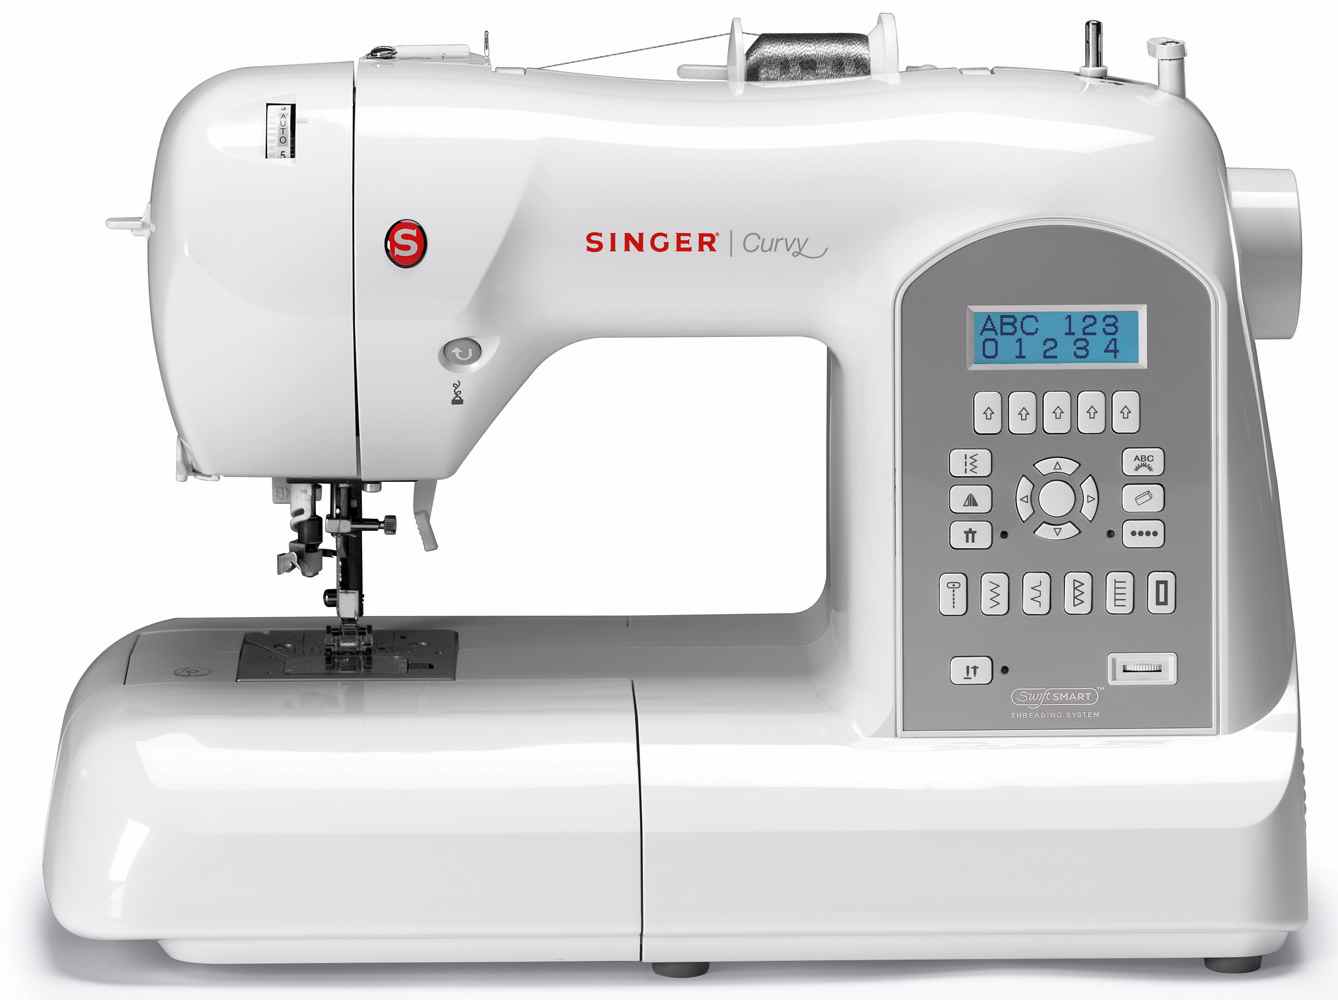 Singer Curvy 8770 una de las mejores maquinas de coser